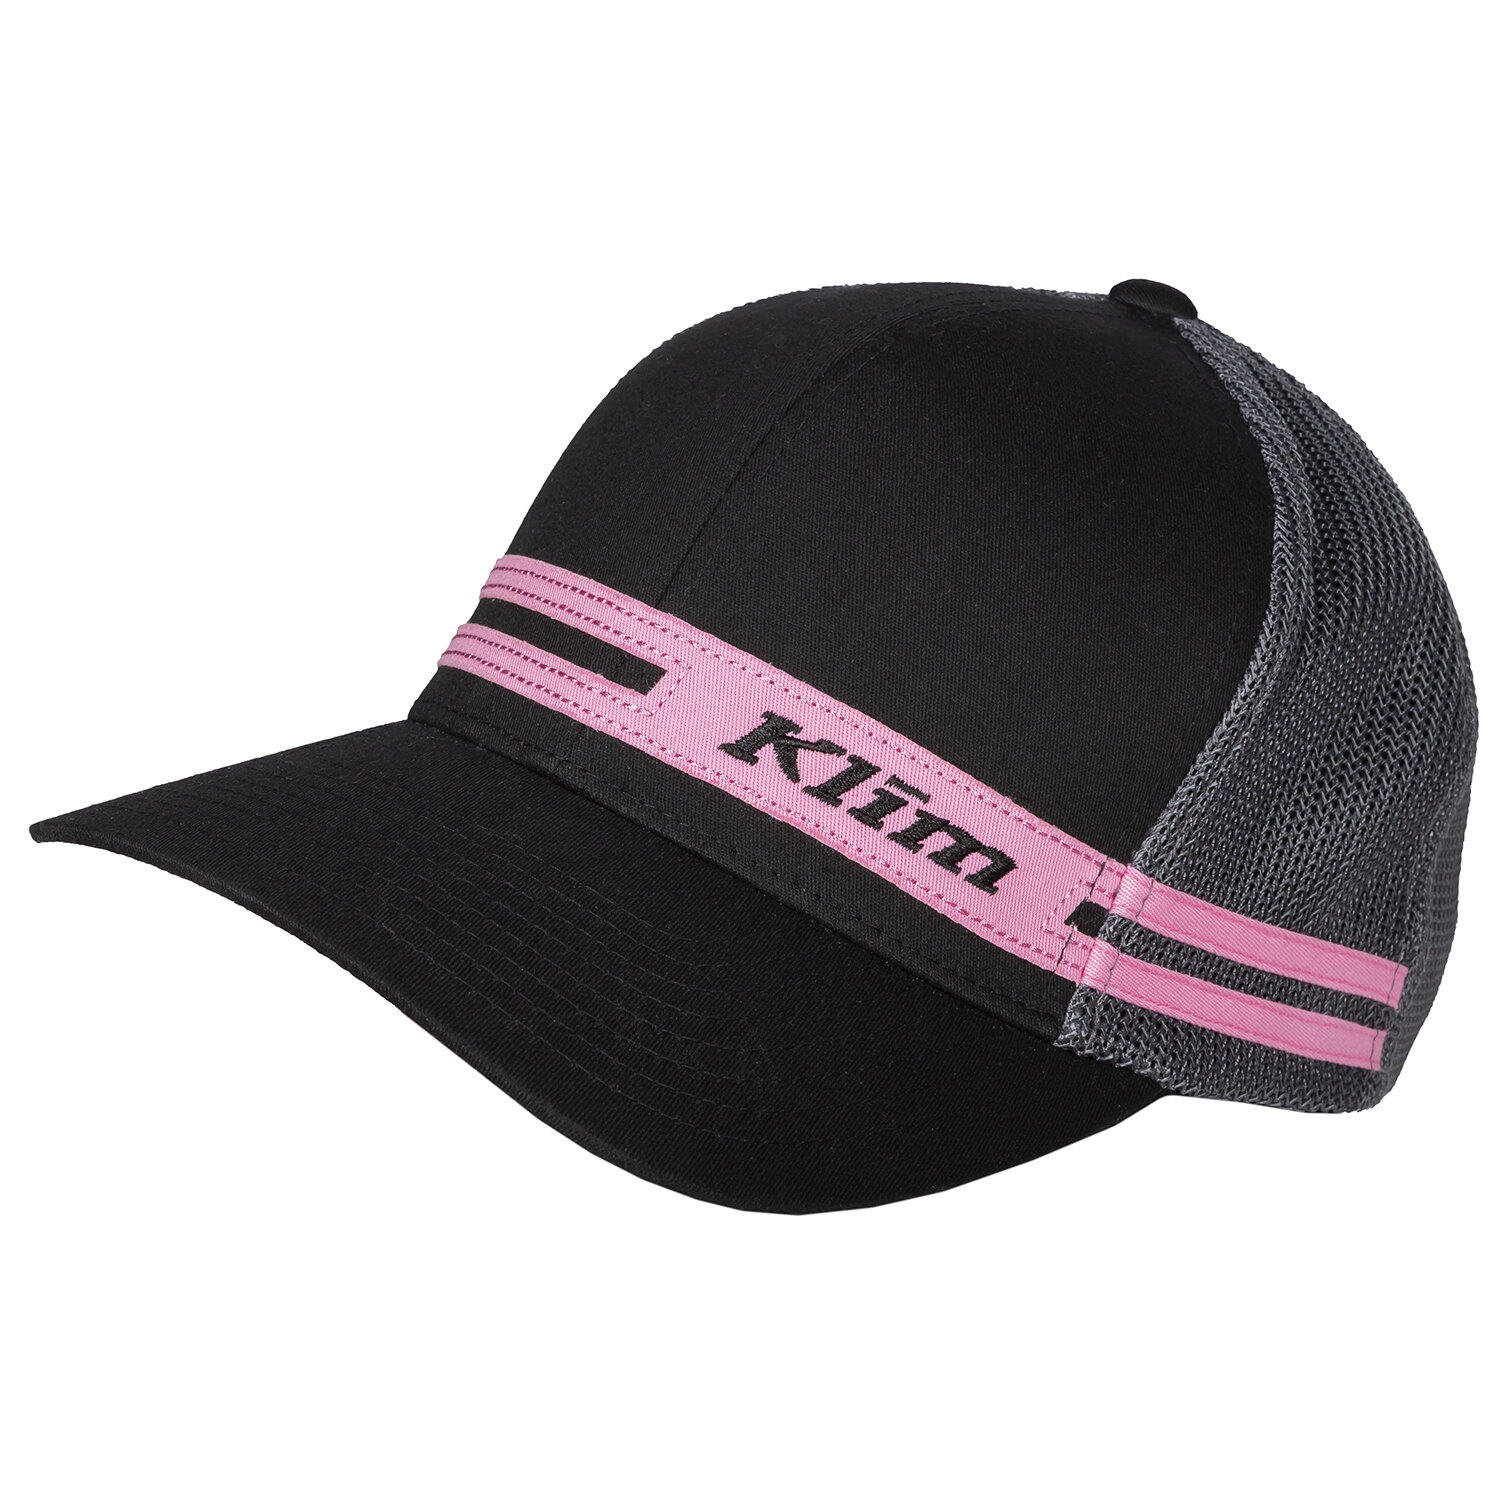 Vista Hat Black Knockout Pink